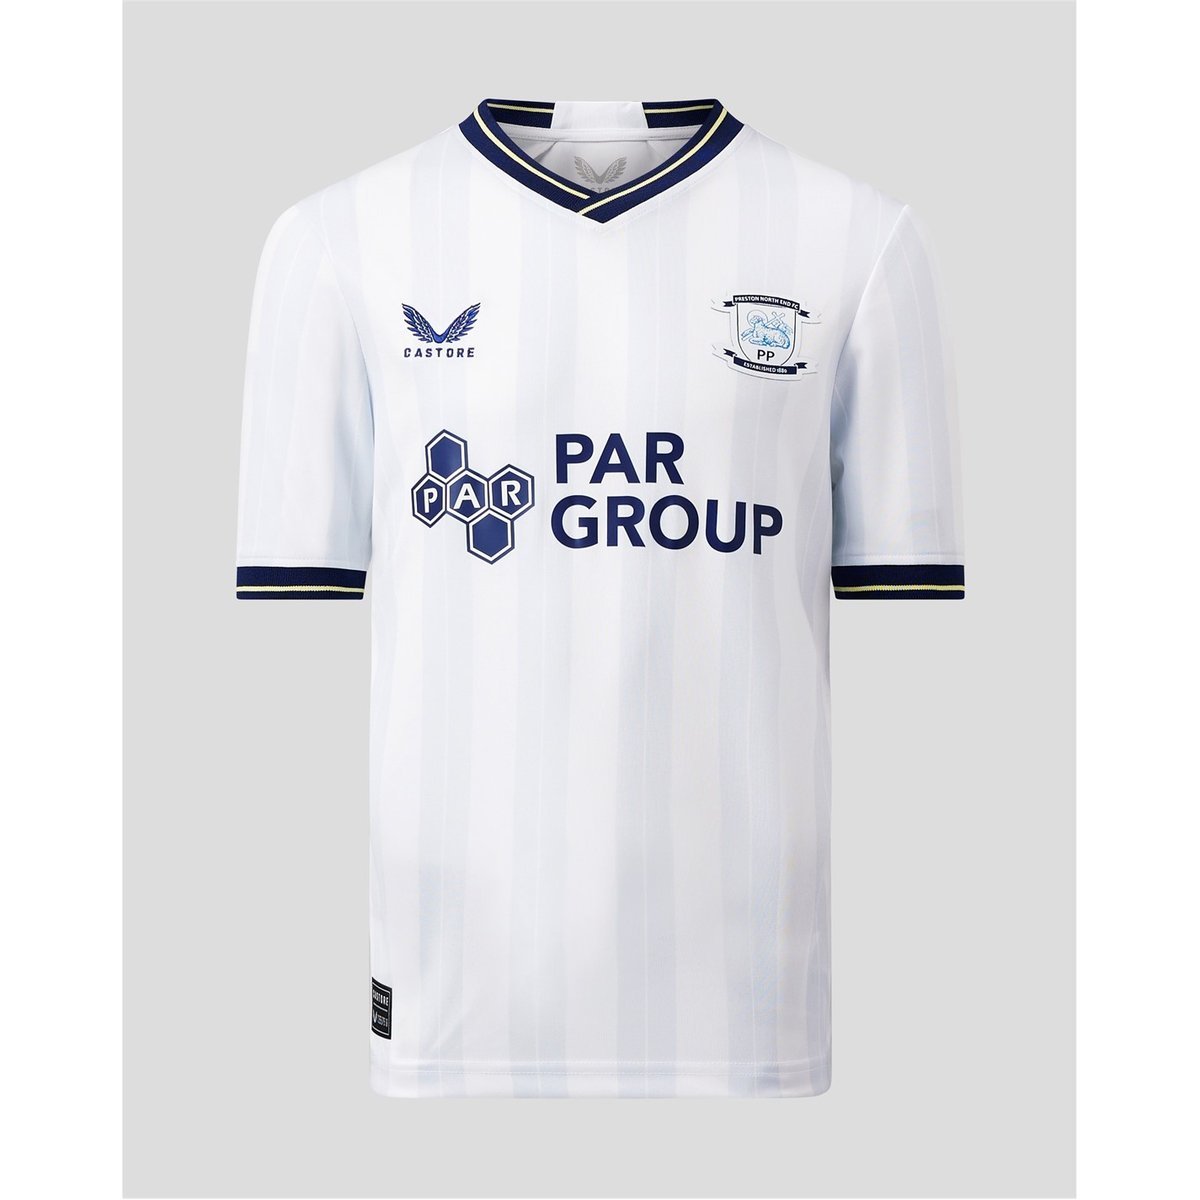  Castore 2021-2022 Rangers Third Football Soccer T-Shirt Jersey  : Sports & Outdoors